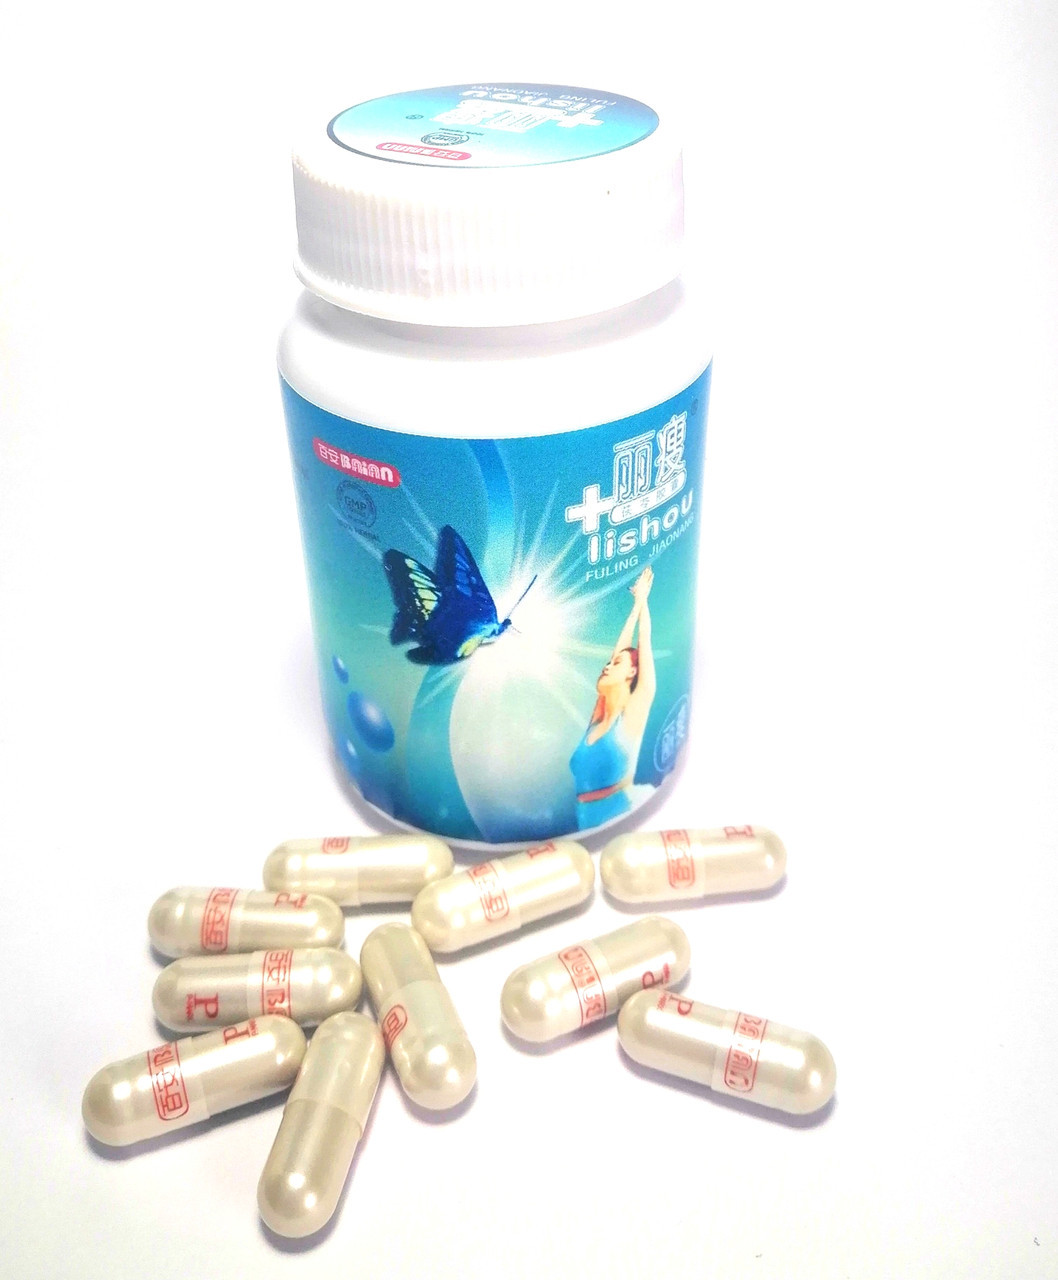 10 шт Капсул для похудения Лишоу (Lishou), Таиланд / Lishou, 30 capsules